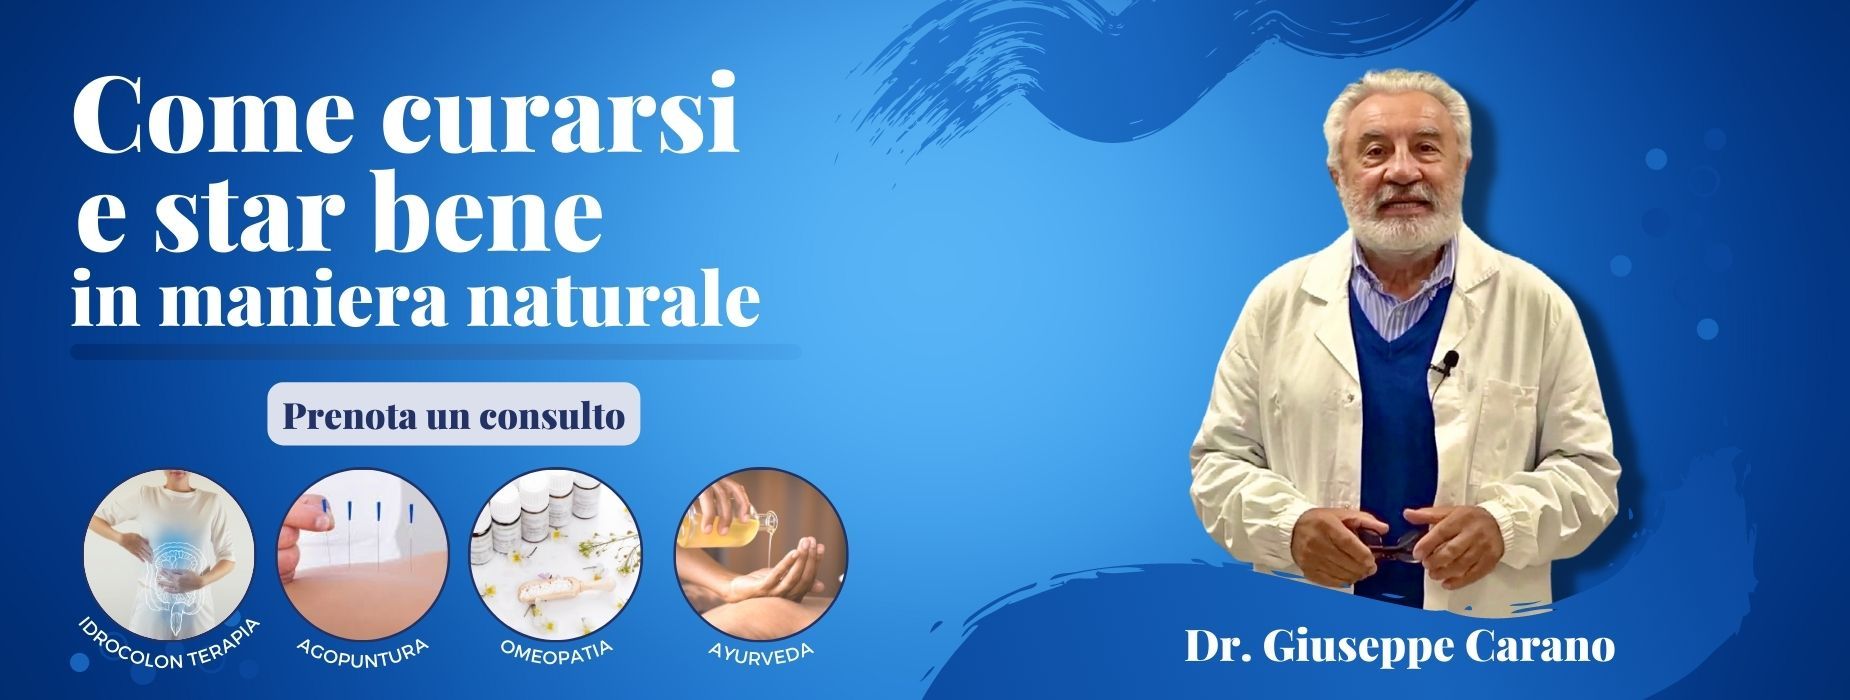 Consulti di agopuntura, ayurveda e idro colon terapia con il dott. Carano presso il Centro Studi Bhaktivedanta